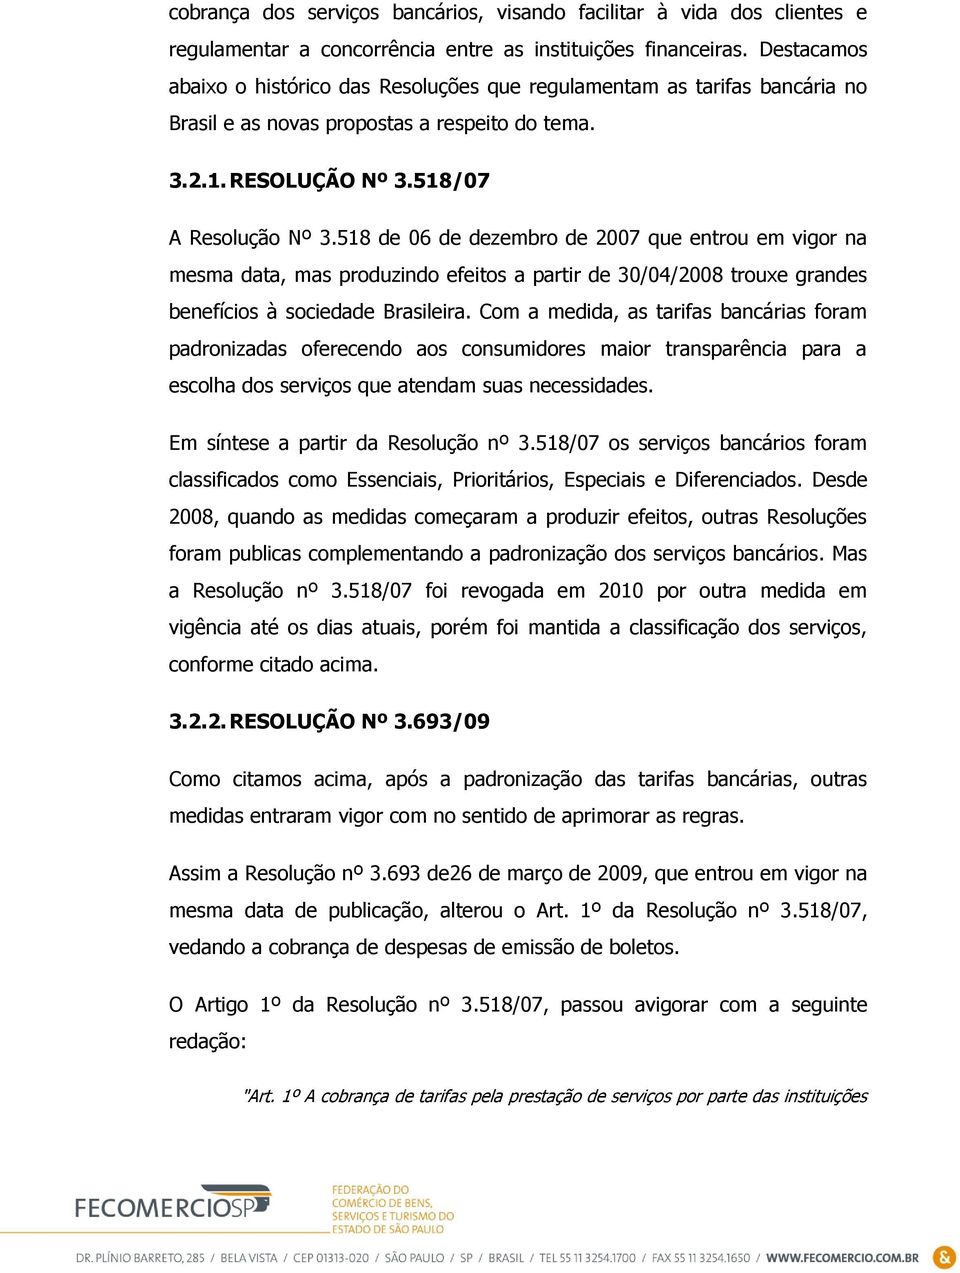 518 de 06 de dezembro de 2007 que entrou em vigor na mesma data, mas produzindo efeitos a partir de 30/04/2008 trouxe grandes benefícios à sociedade Brasileira.